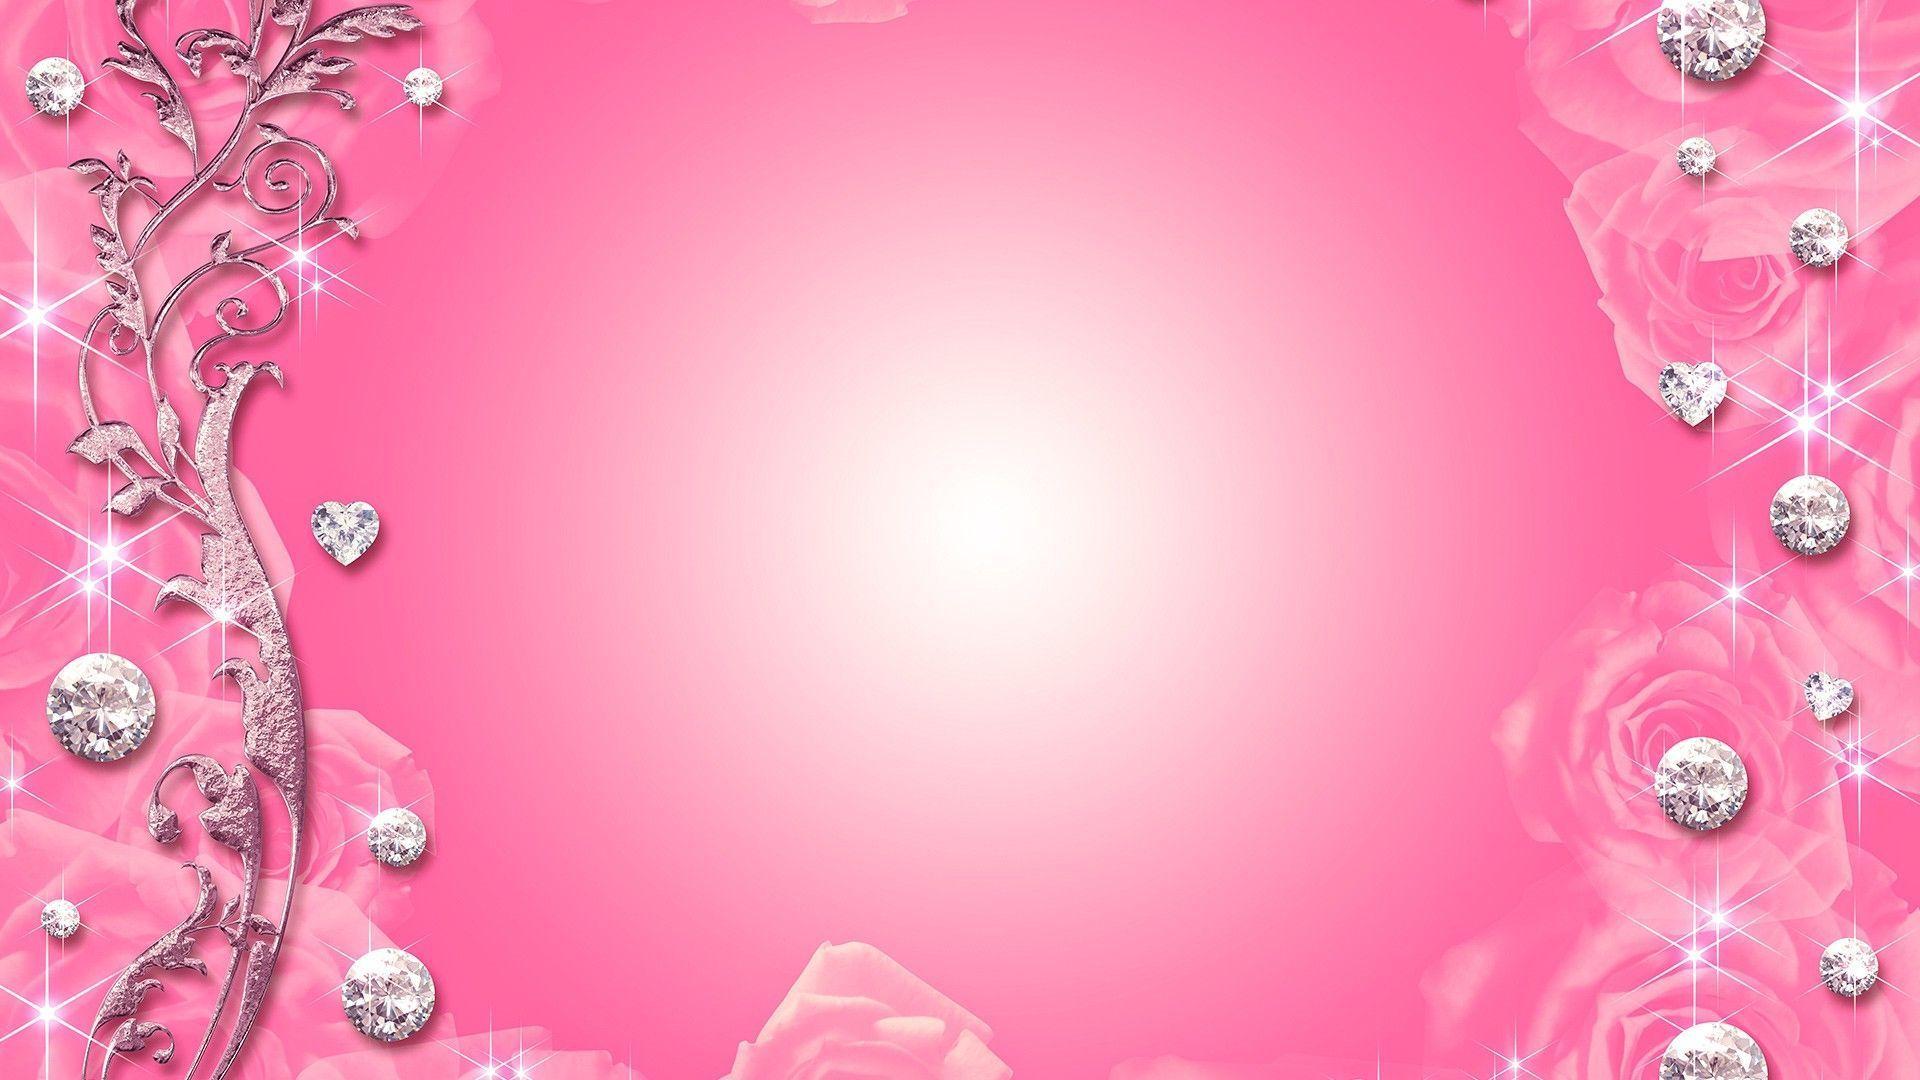 Wallpaper For > Pink Color Wallpaper For Desktop